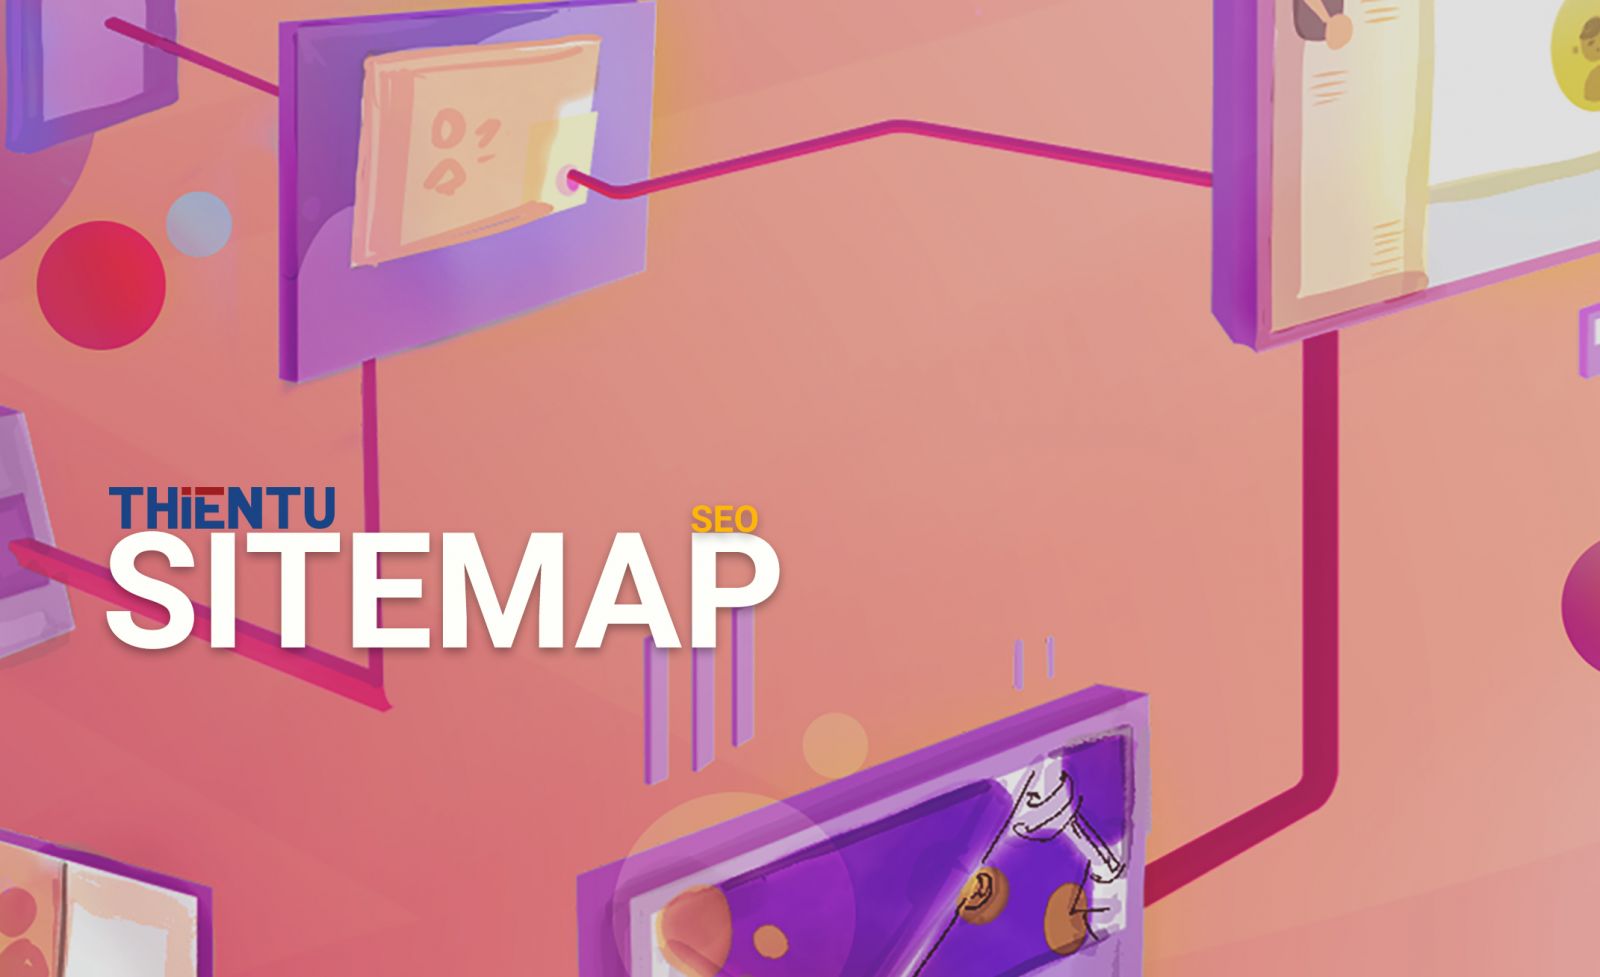 Sitemap là gì?